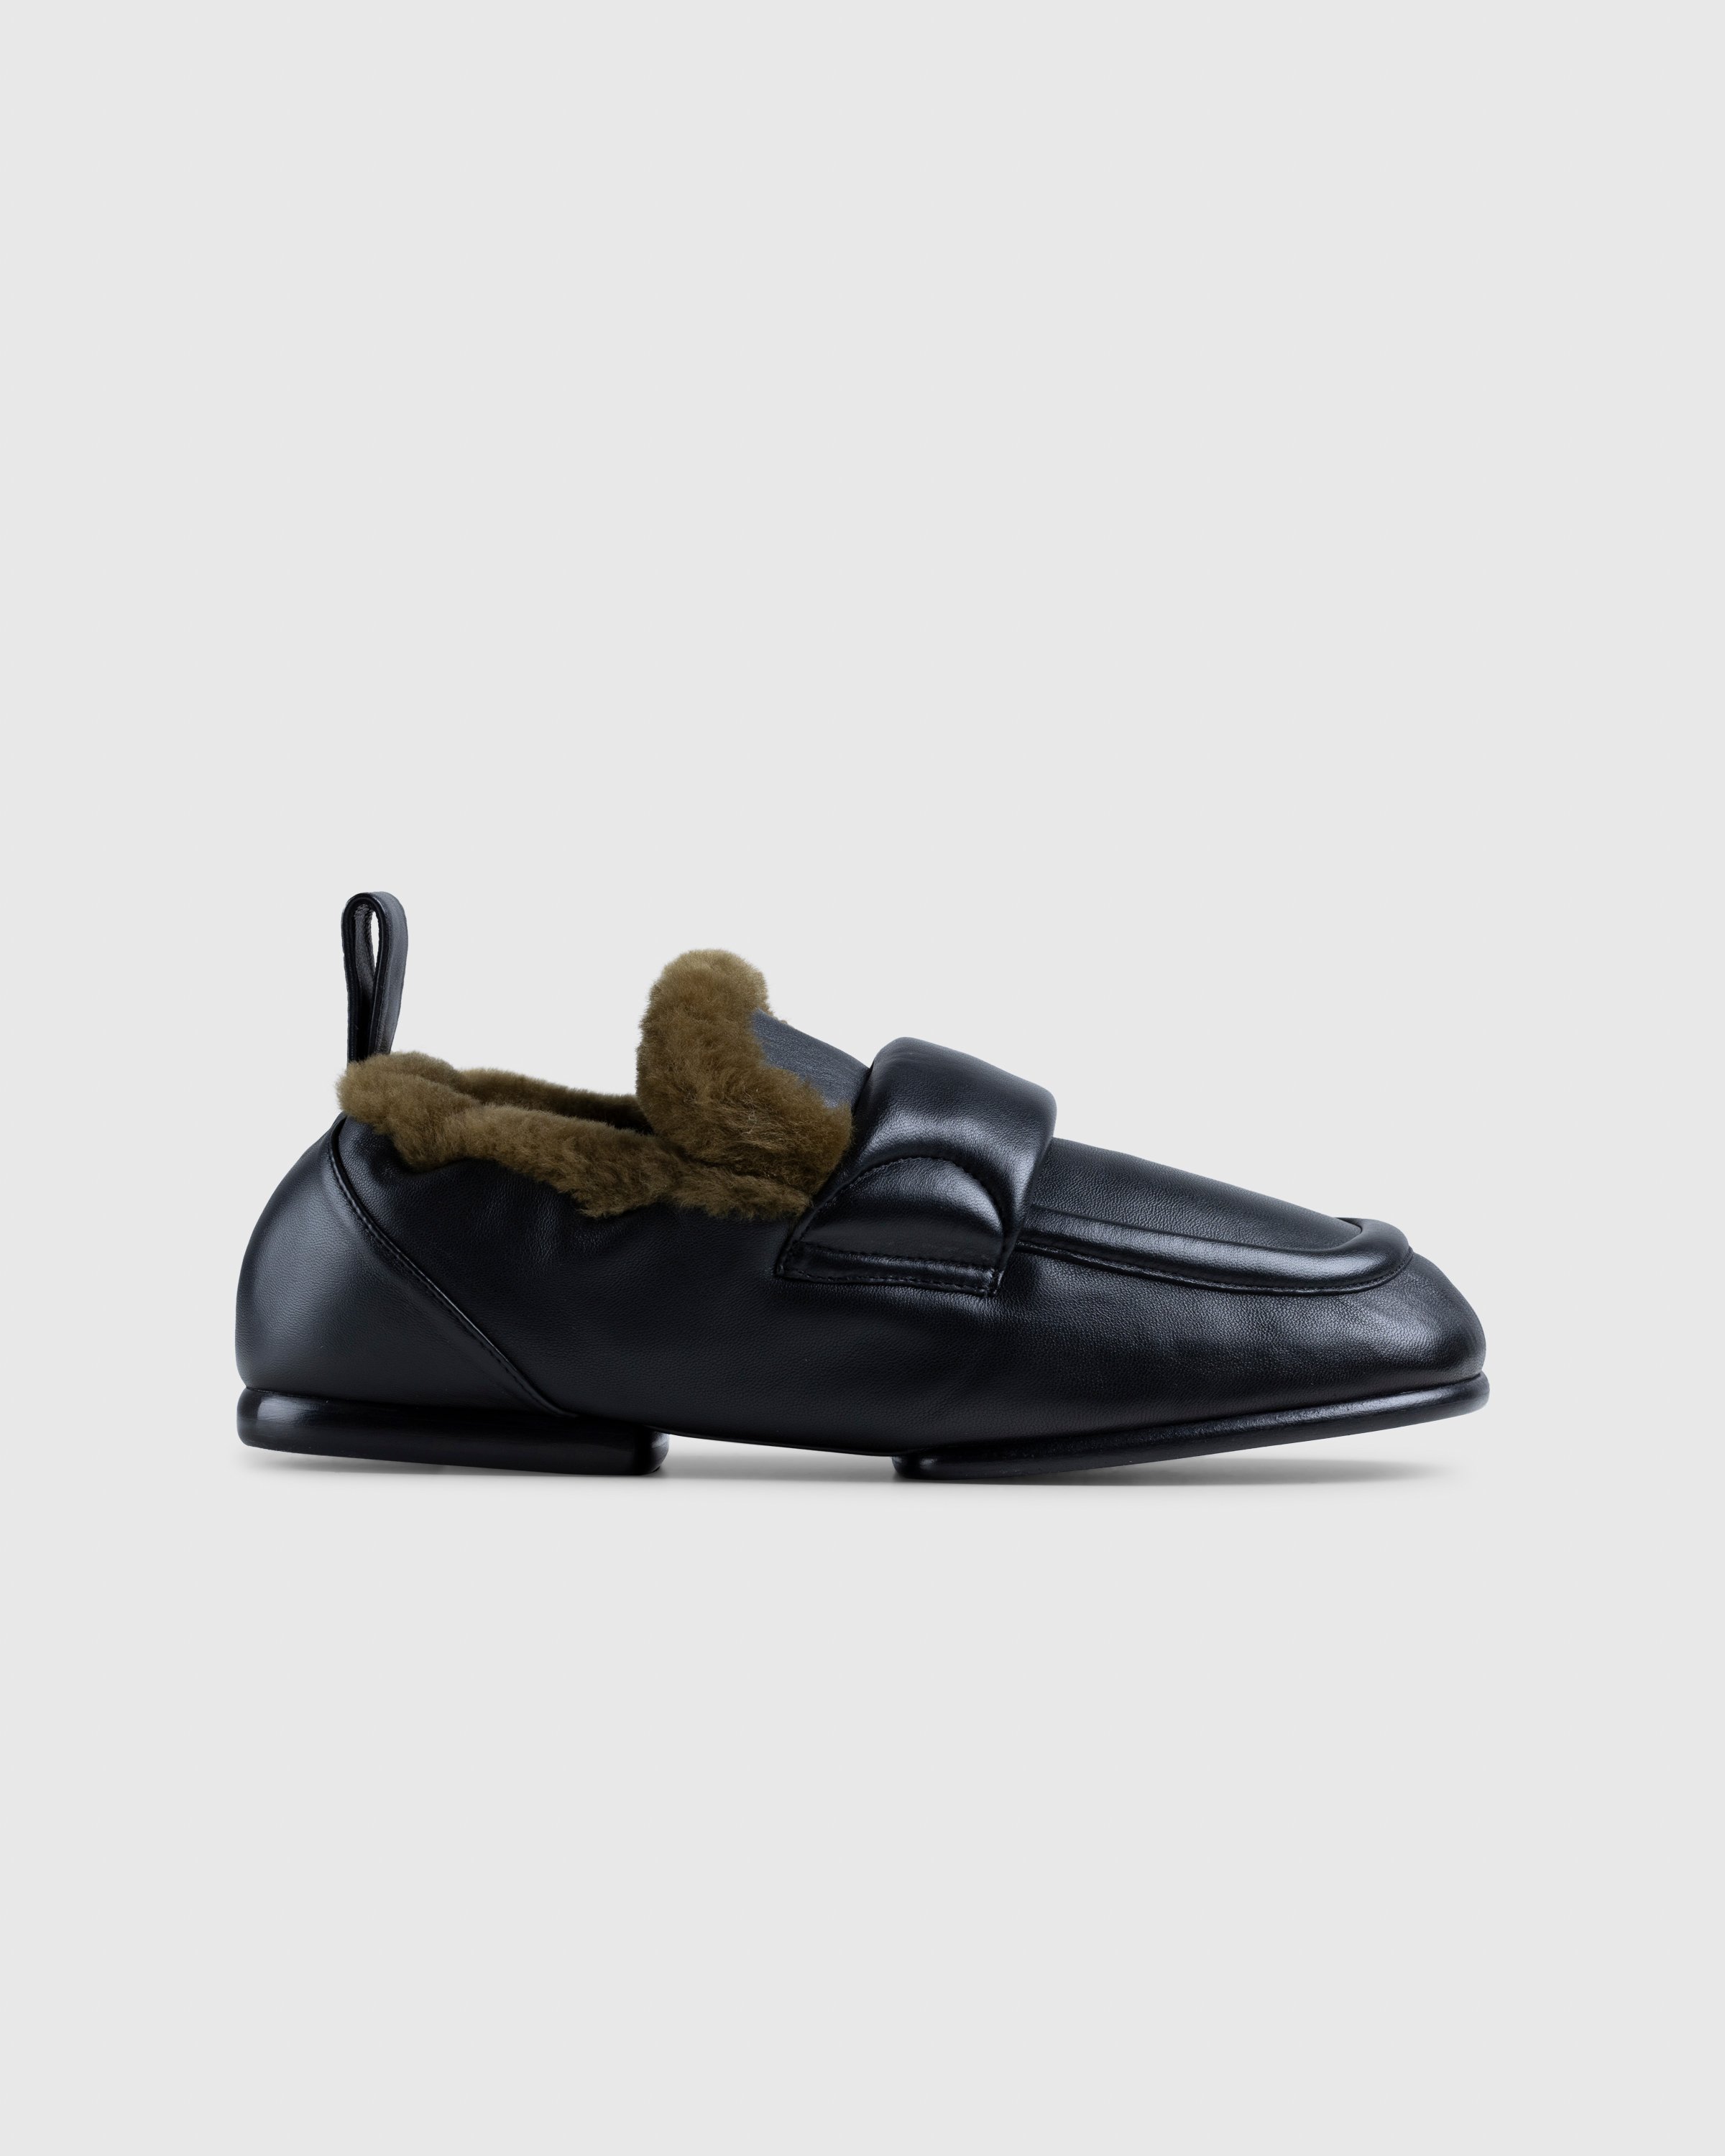 Dries van Noten - Padded Faux Fur Loafers Black - Footwear - Black - Image 1